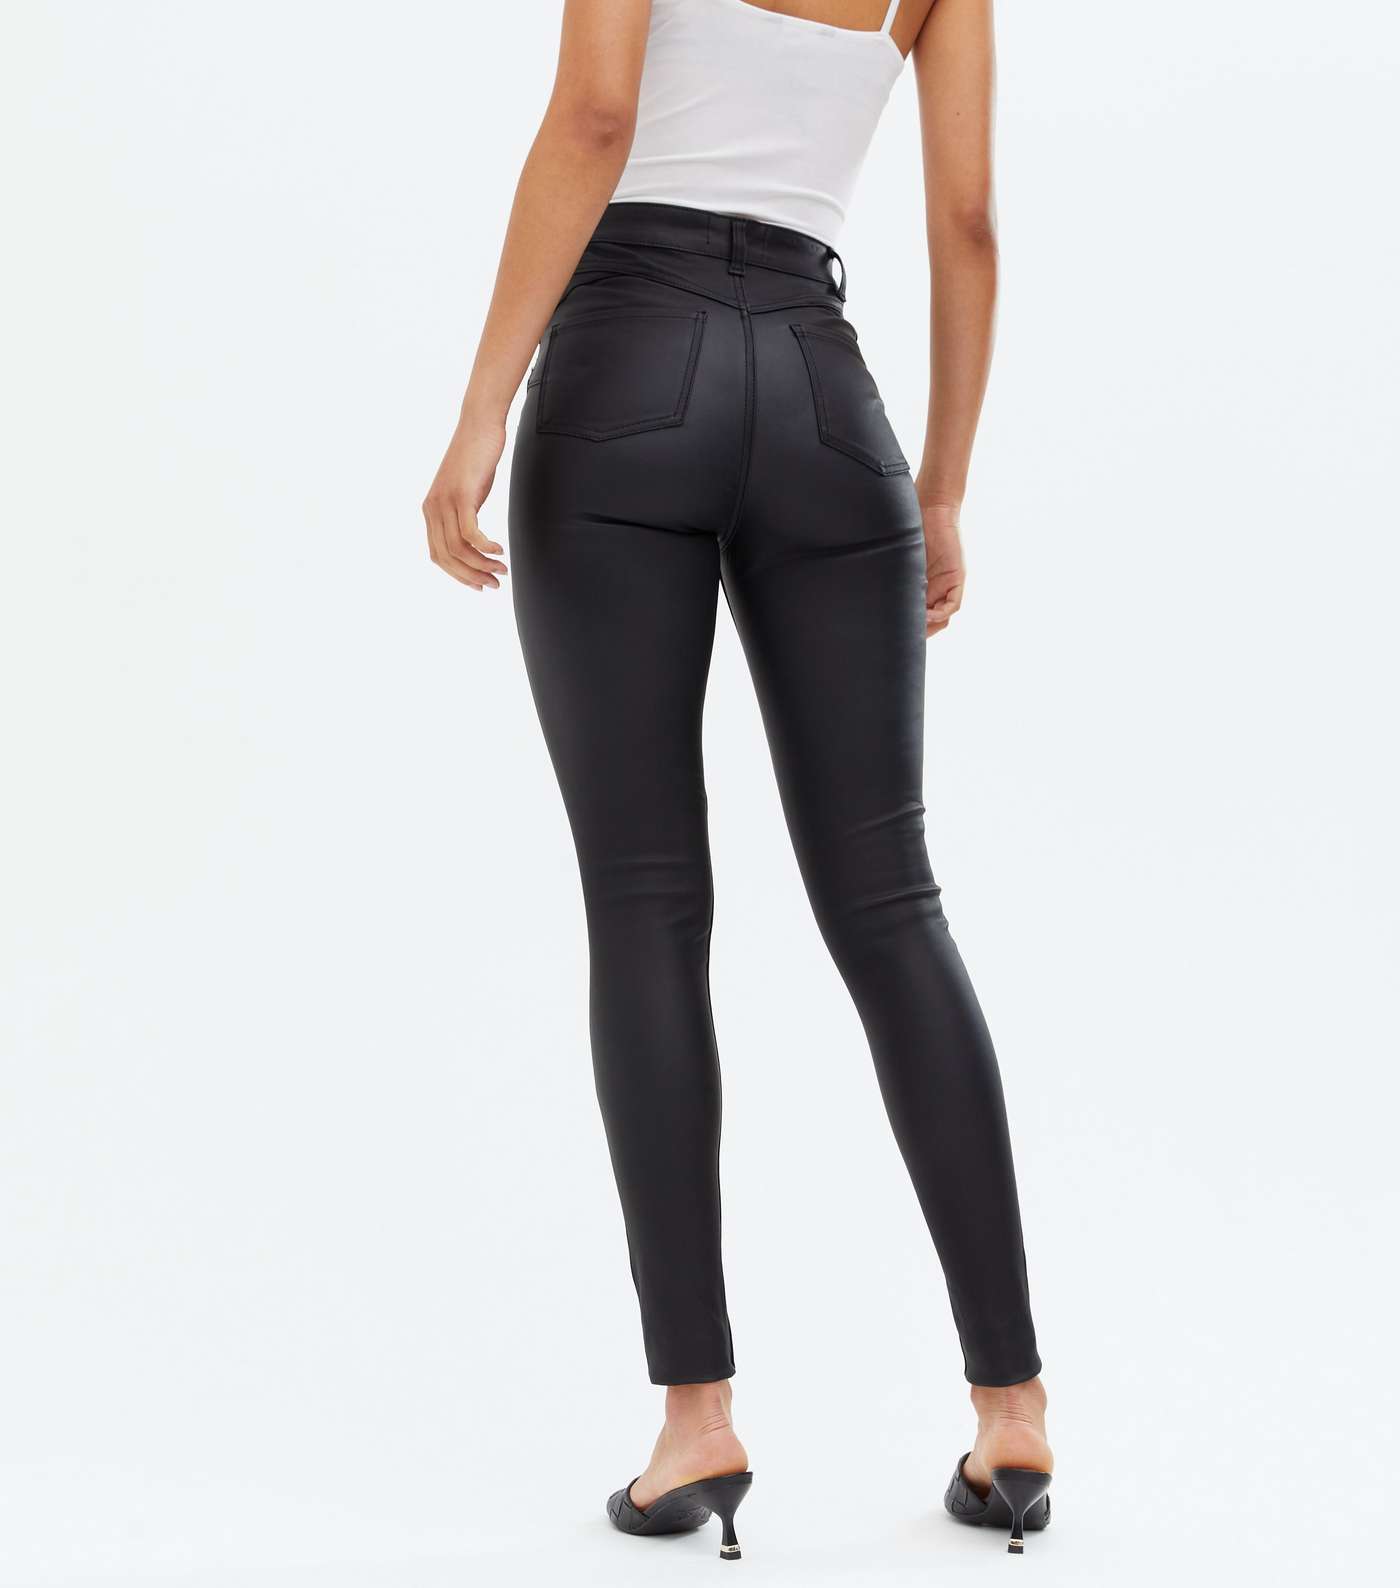 Tall Black Leather-Look High Waist Hallie Super Skinny Jeans Image 2